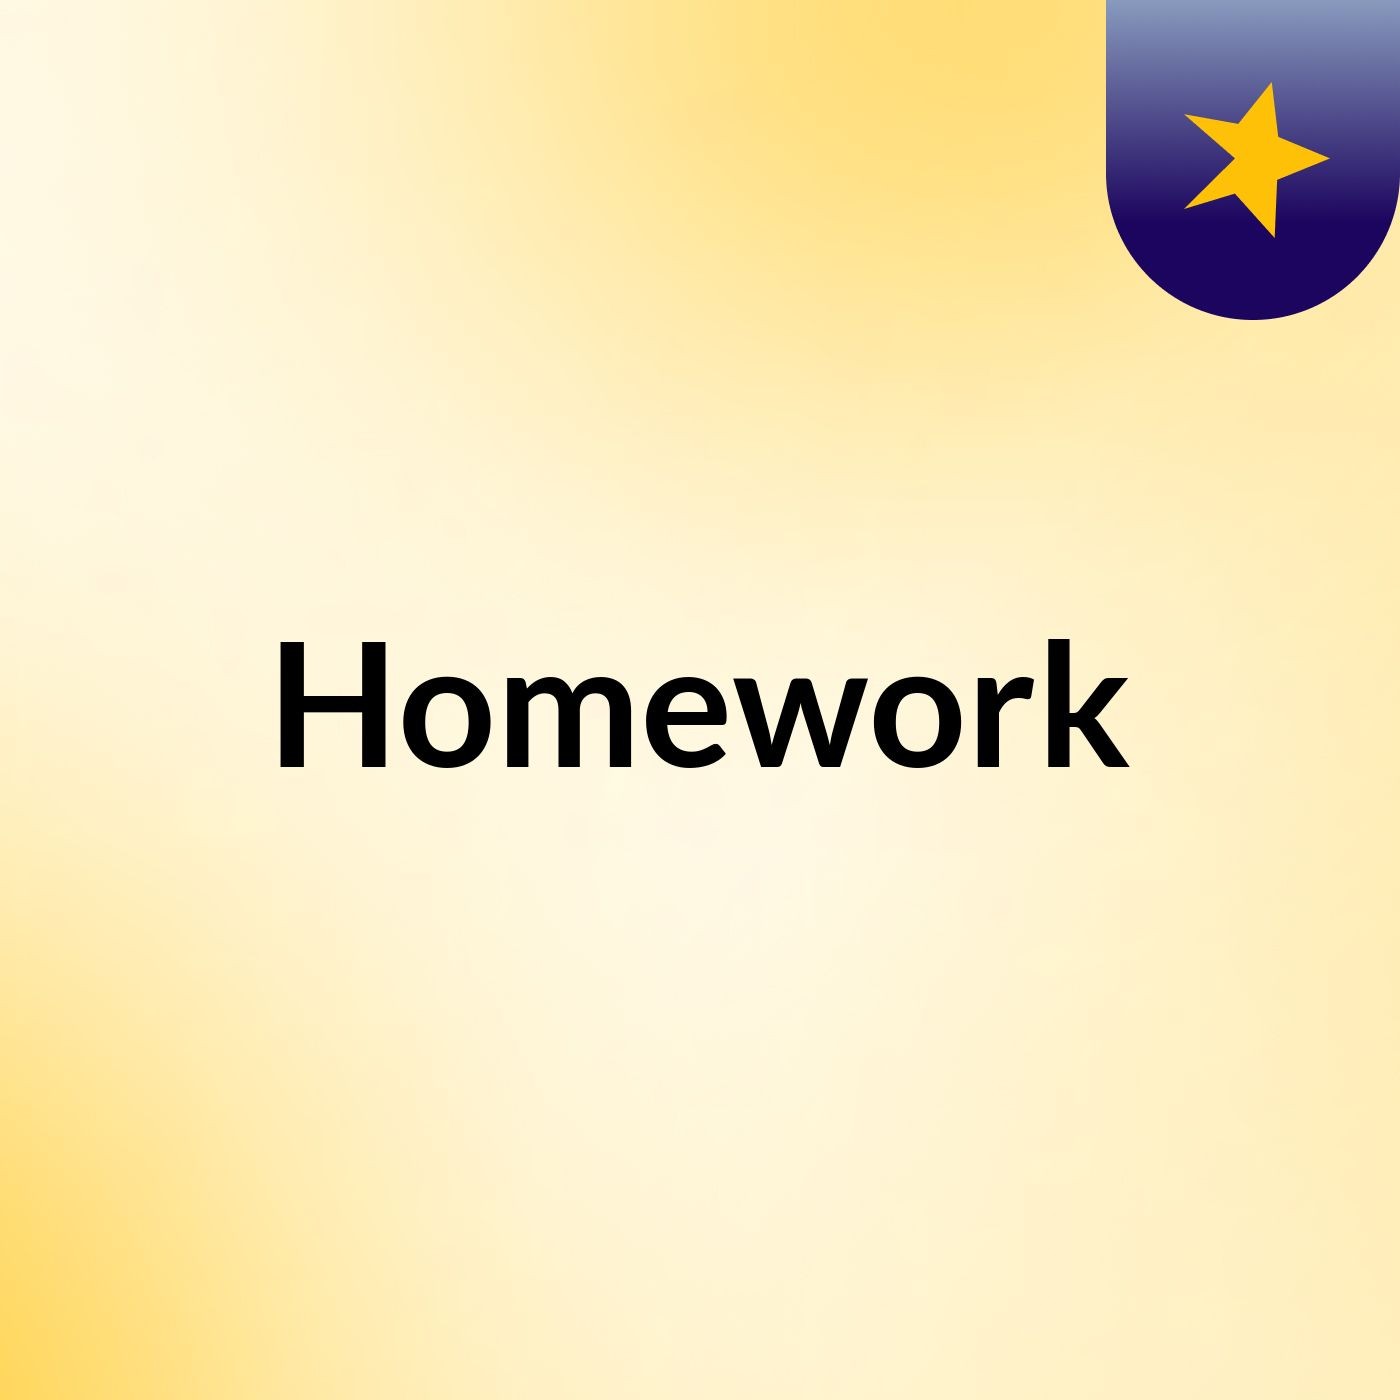 Seventh homework